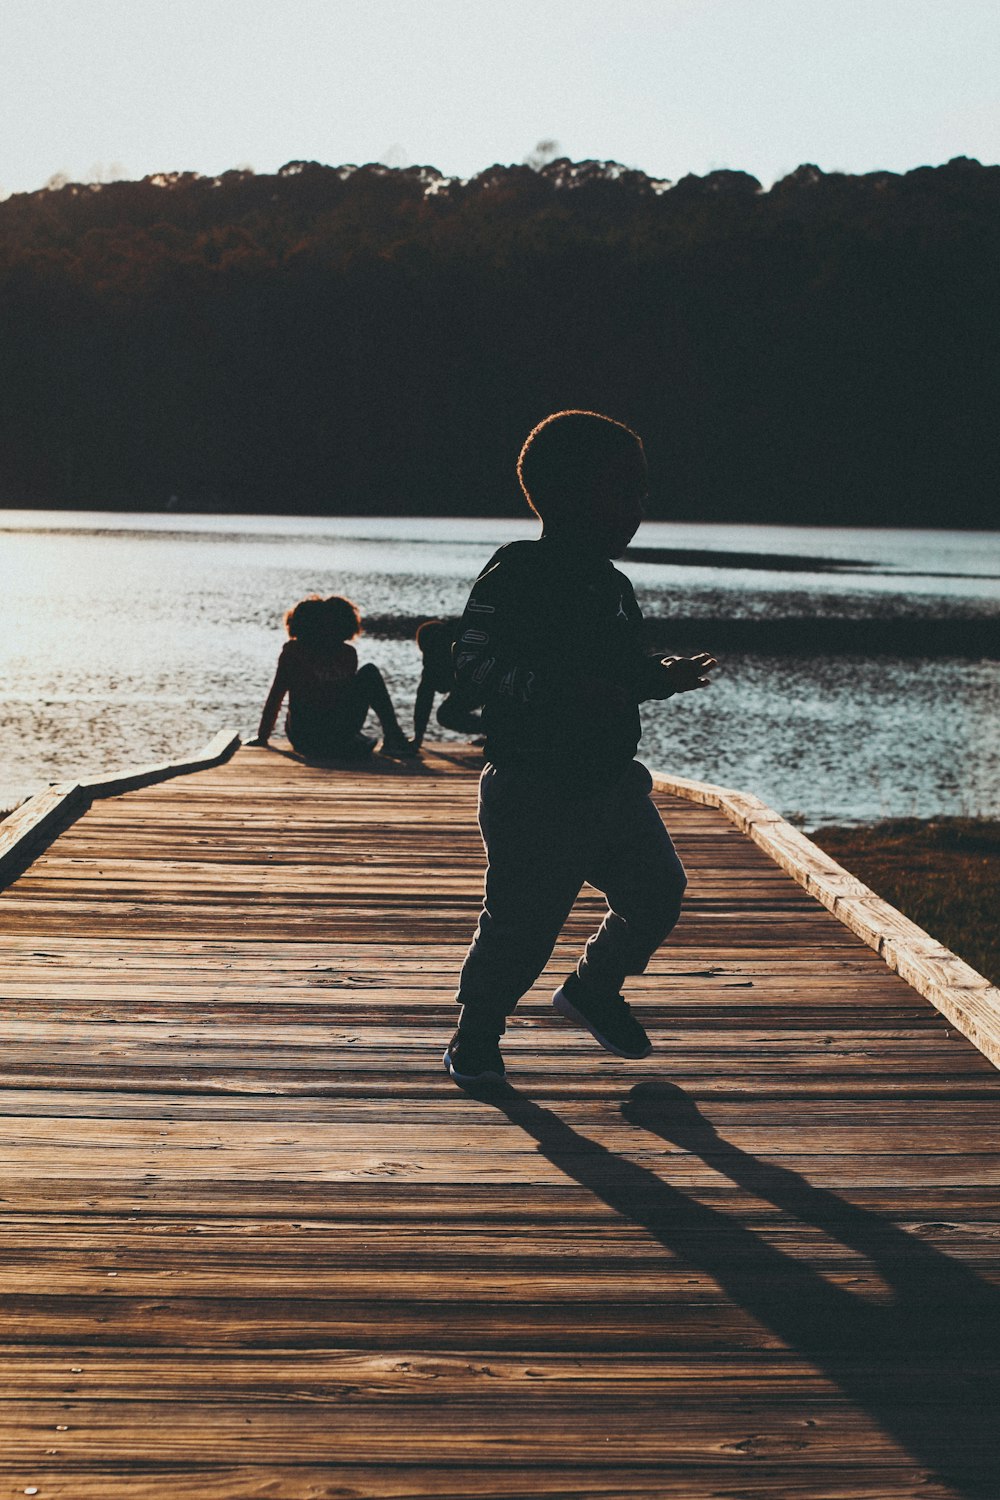 a young boy running across a wooden bridge